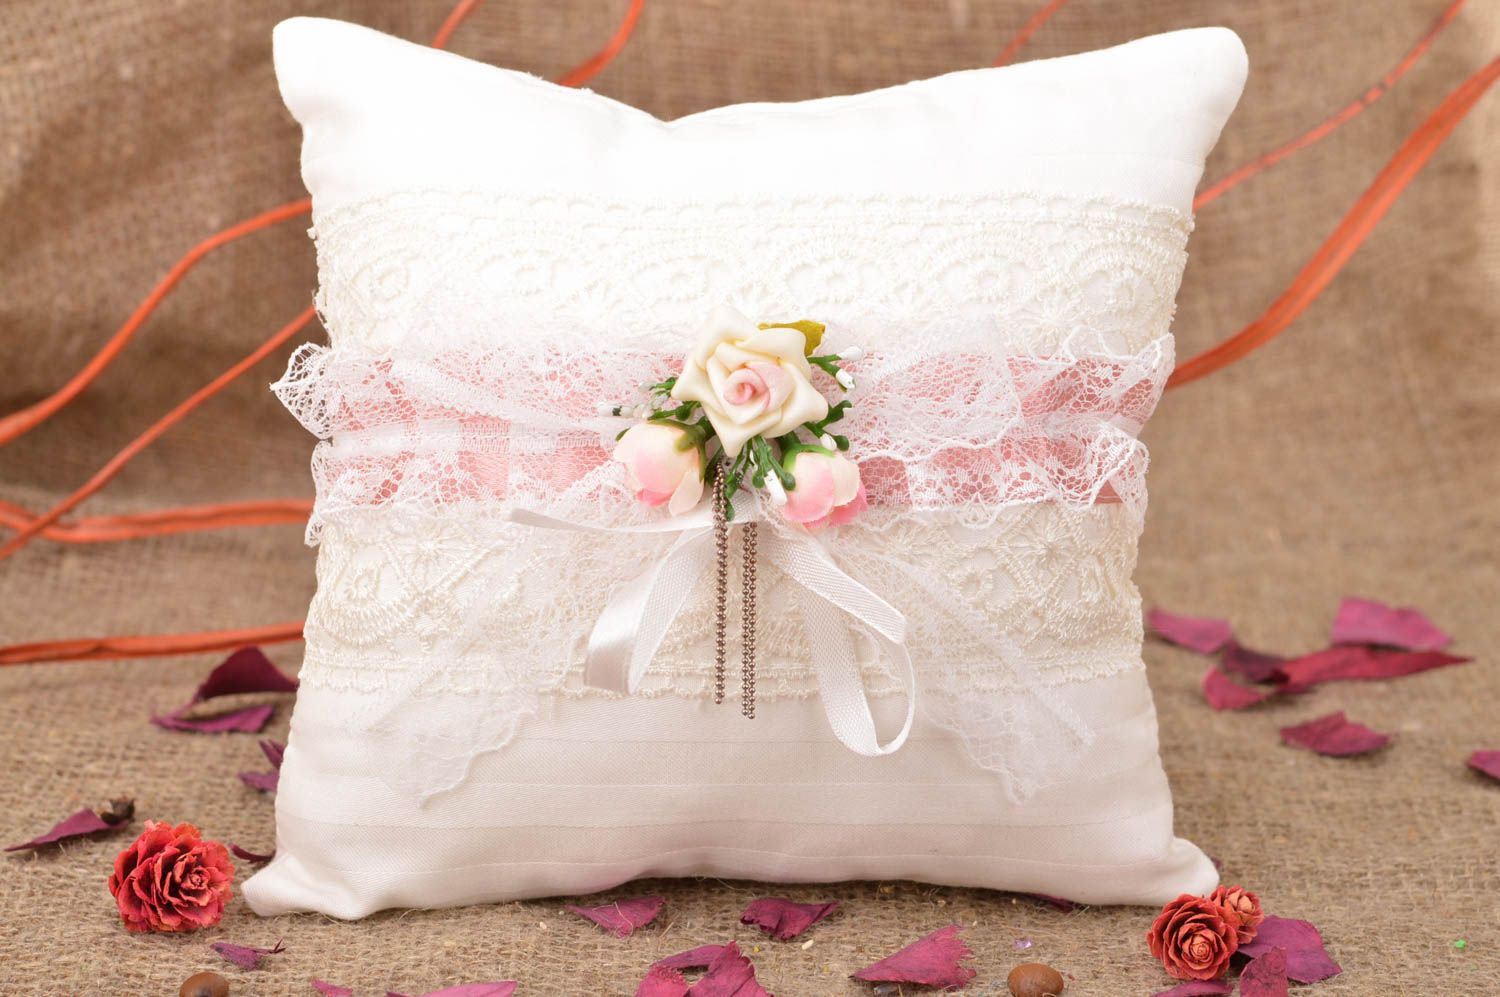 Свадебная подушечка для колец из хлопка белая кружевная красивая ручной работы фото 1